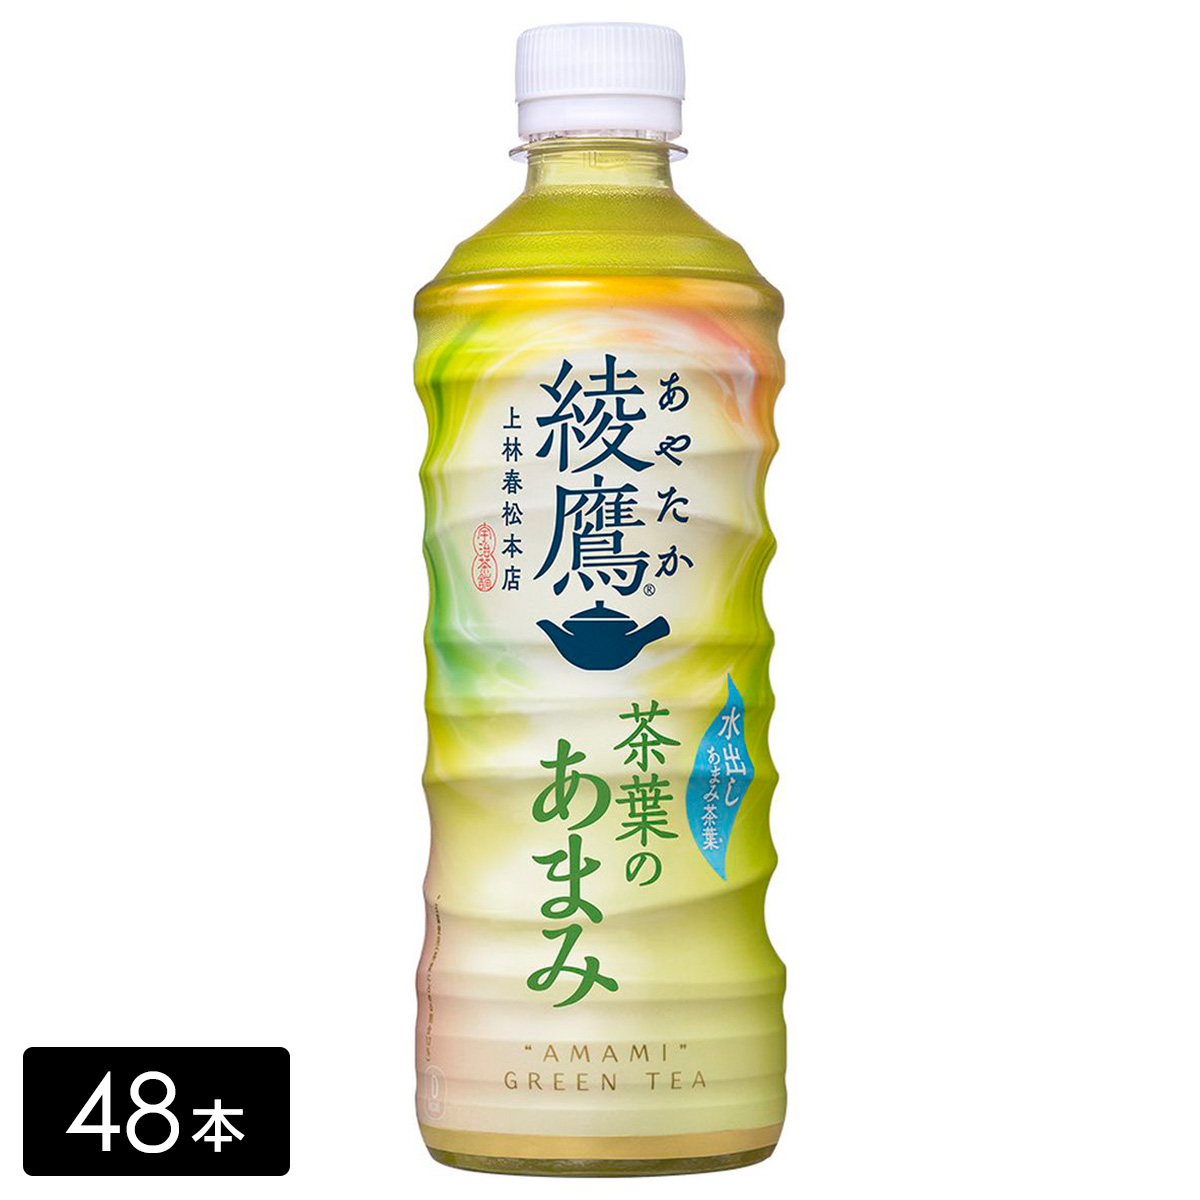 【送料無料 + 38】綾鷹 緑茶 茶葉のあまみ 525mL×48本(24本×2箱)